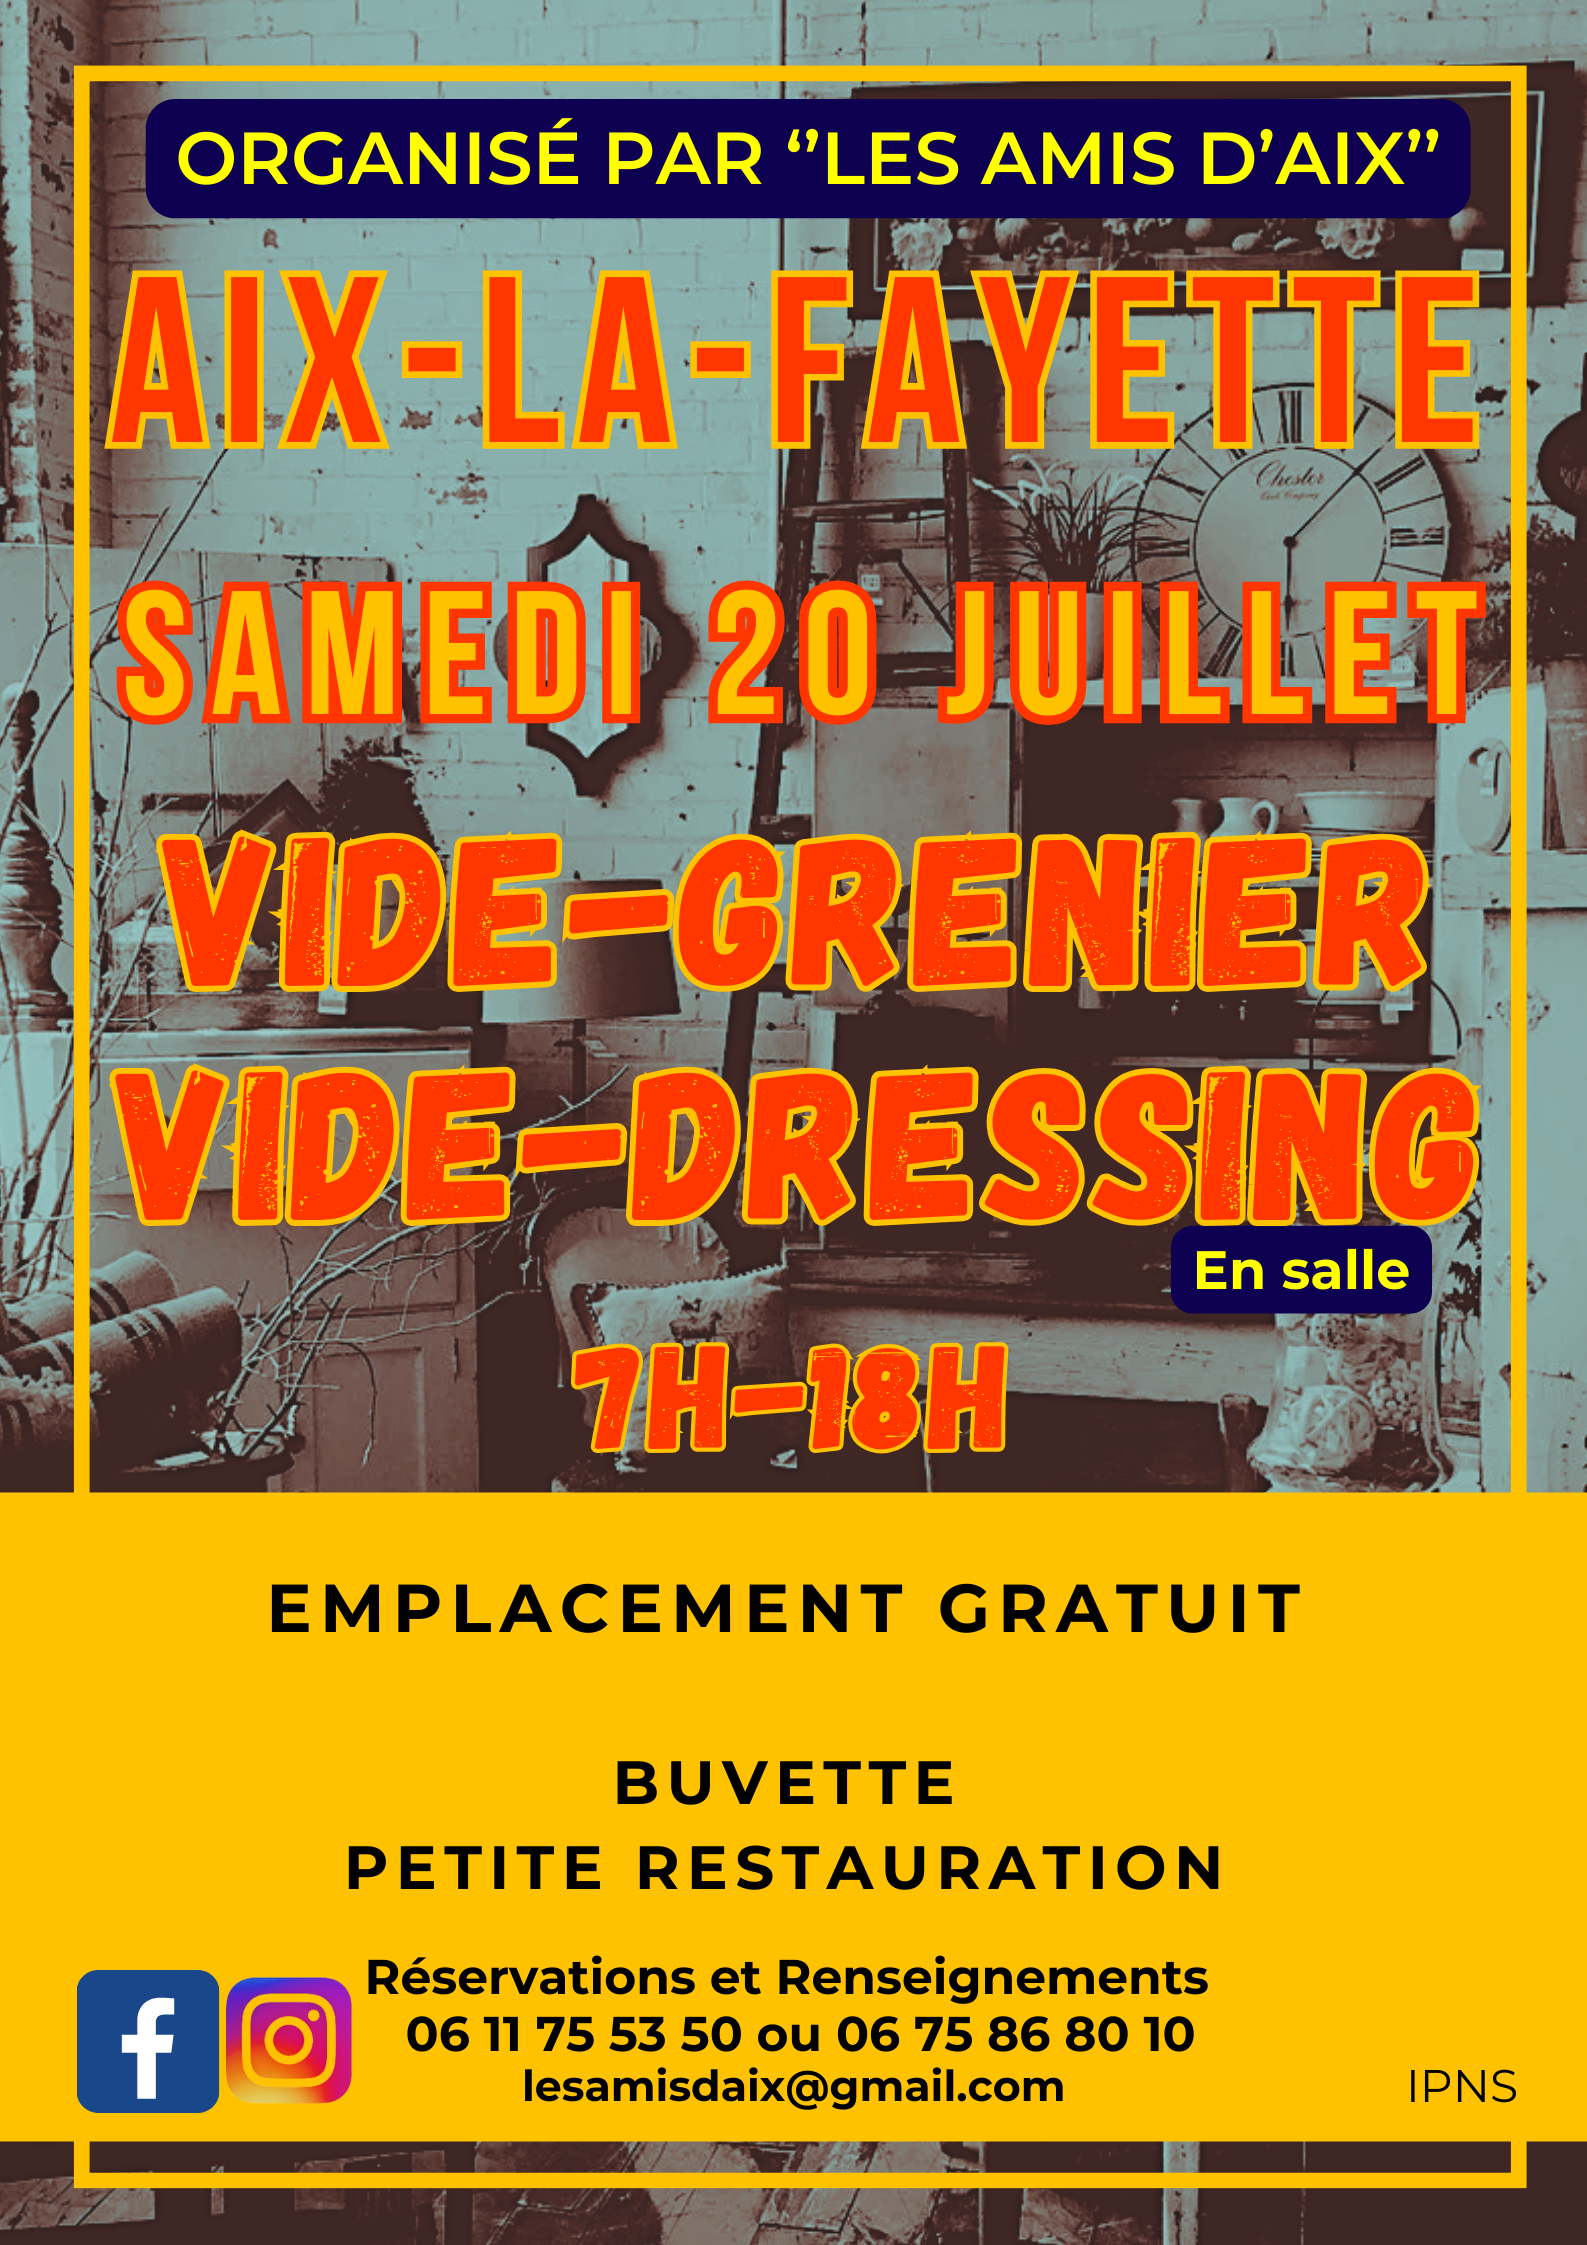 Vide-grenier et vide-dressing // Aix-la-Fayette